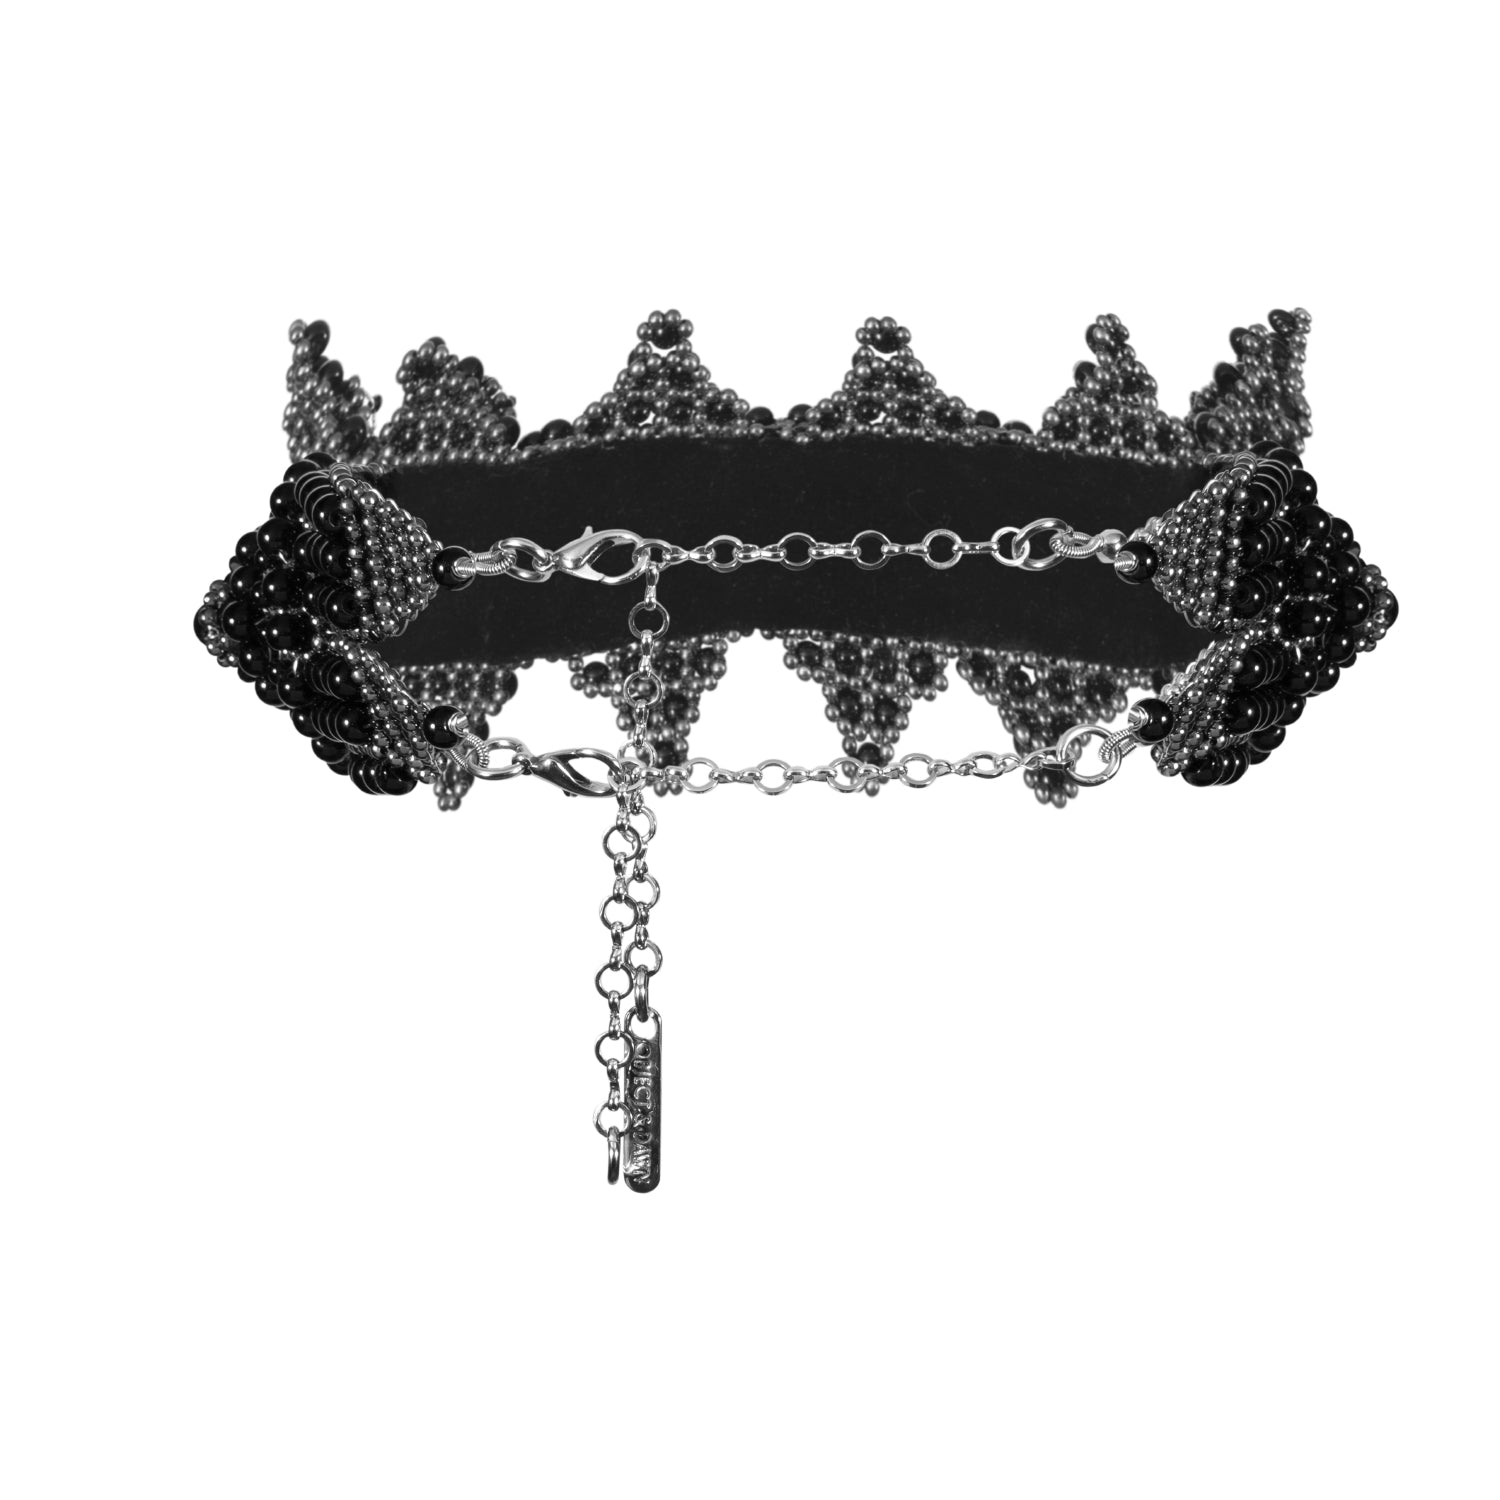 Eingana Modular Crown